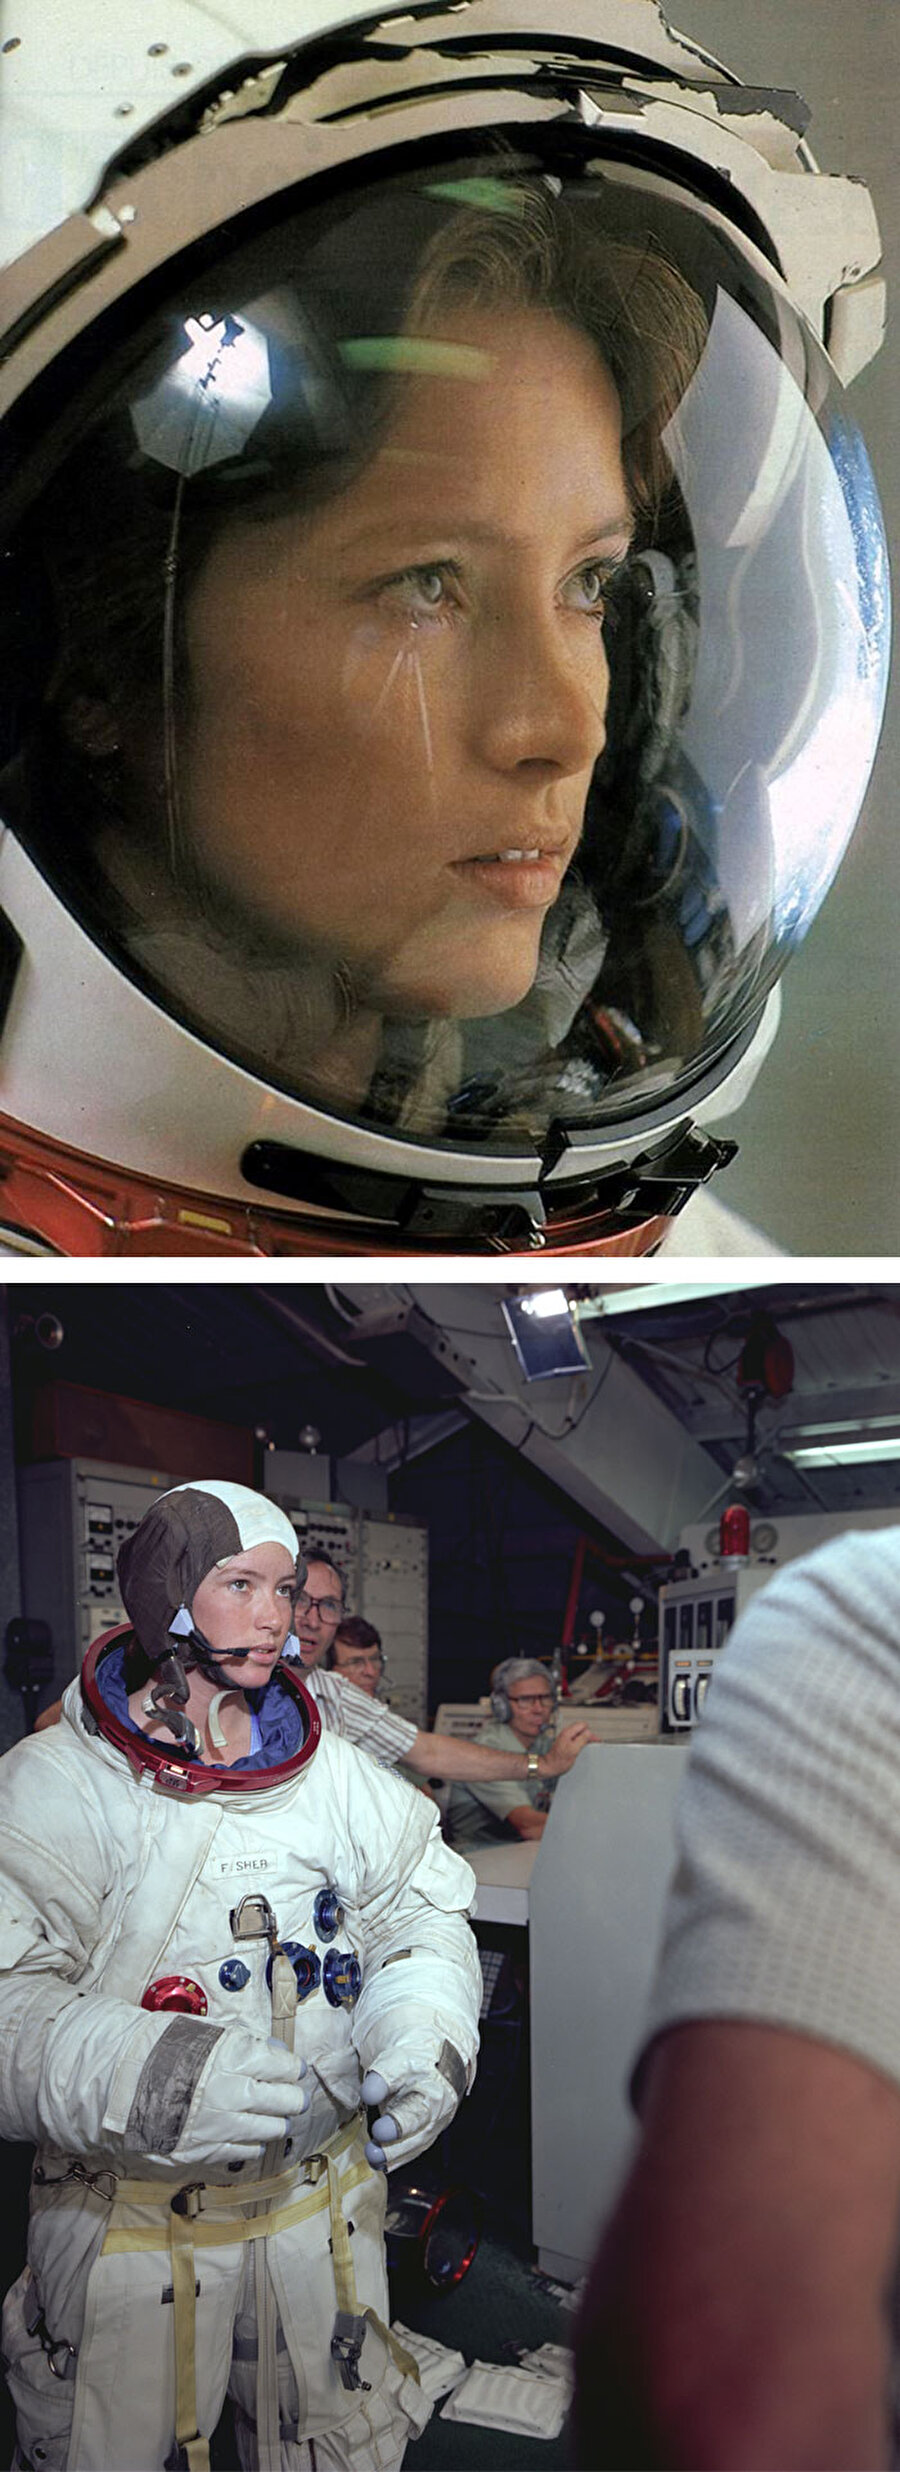 Anna Lee Fisher

                                    
                                    
                                    
                                    
                                    
                                    Uzaydaki ilk anne.
                                
                                
                                
                                
                                
                                